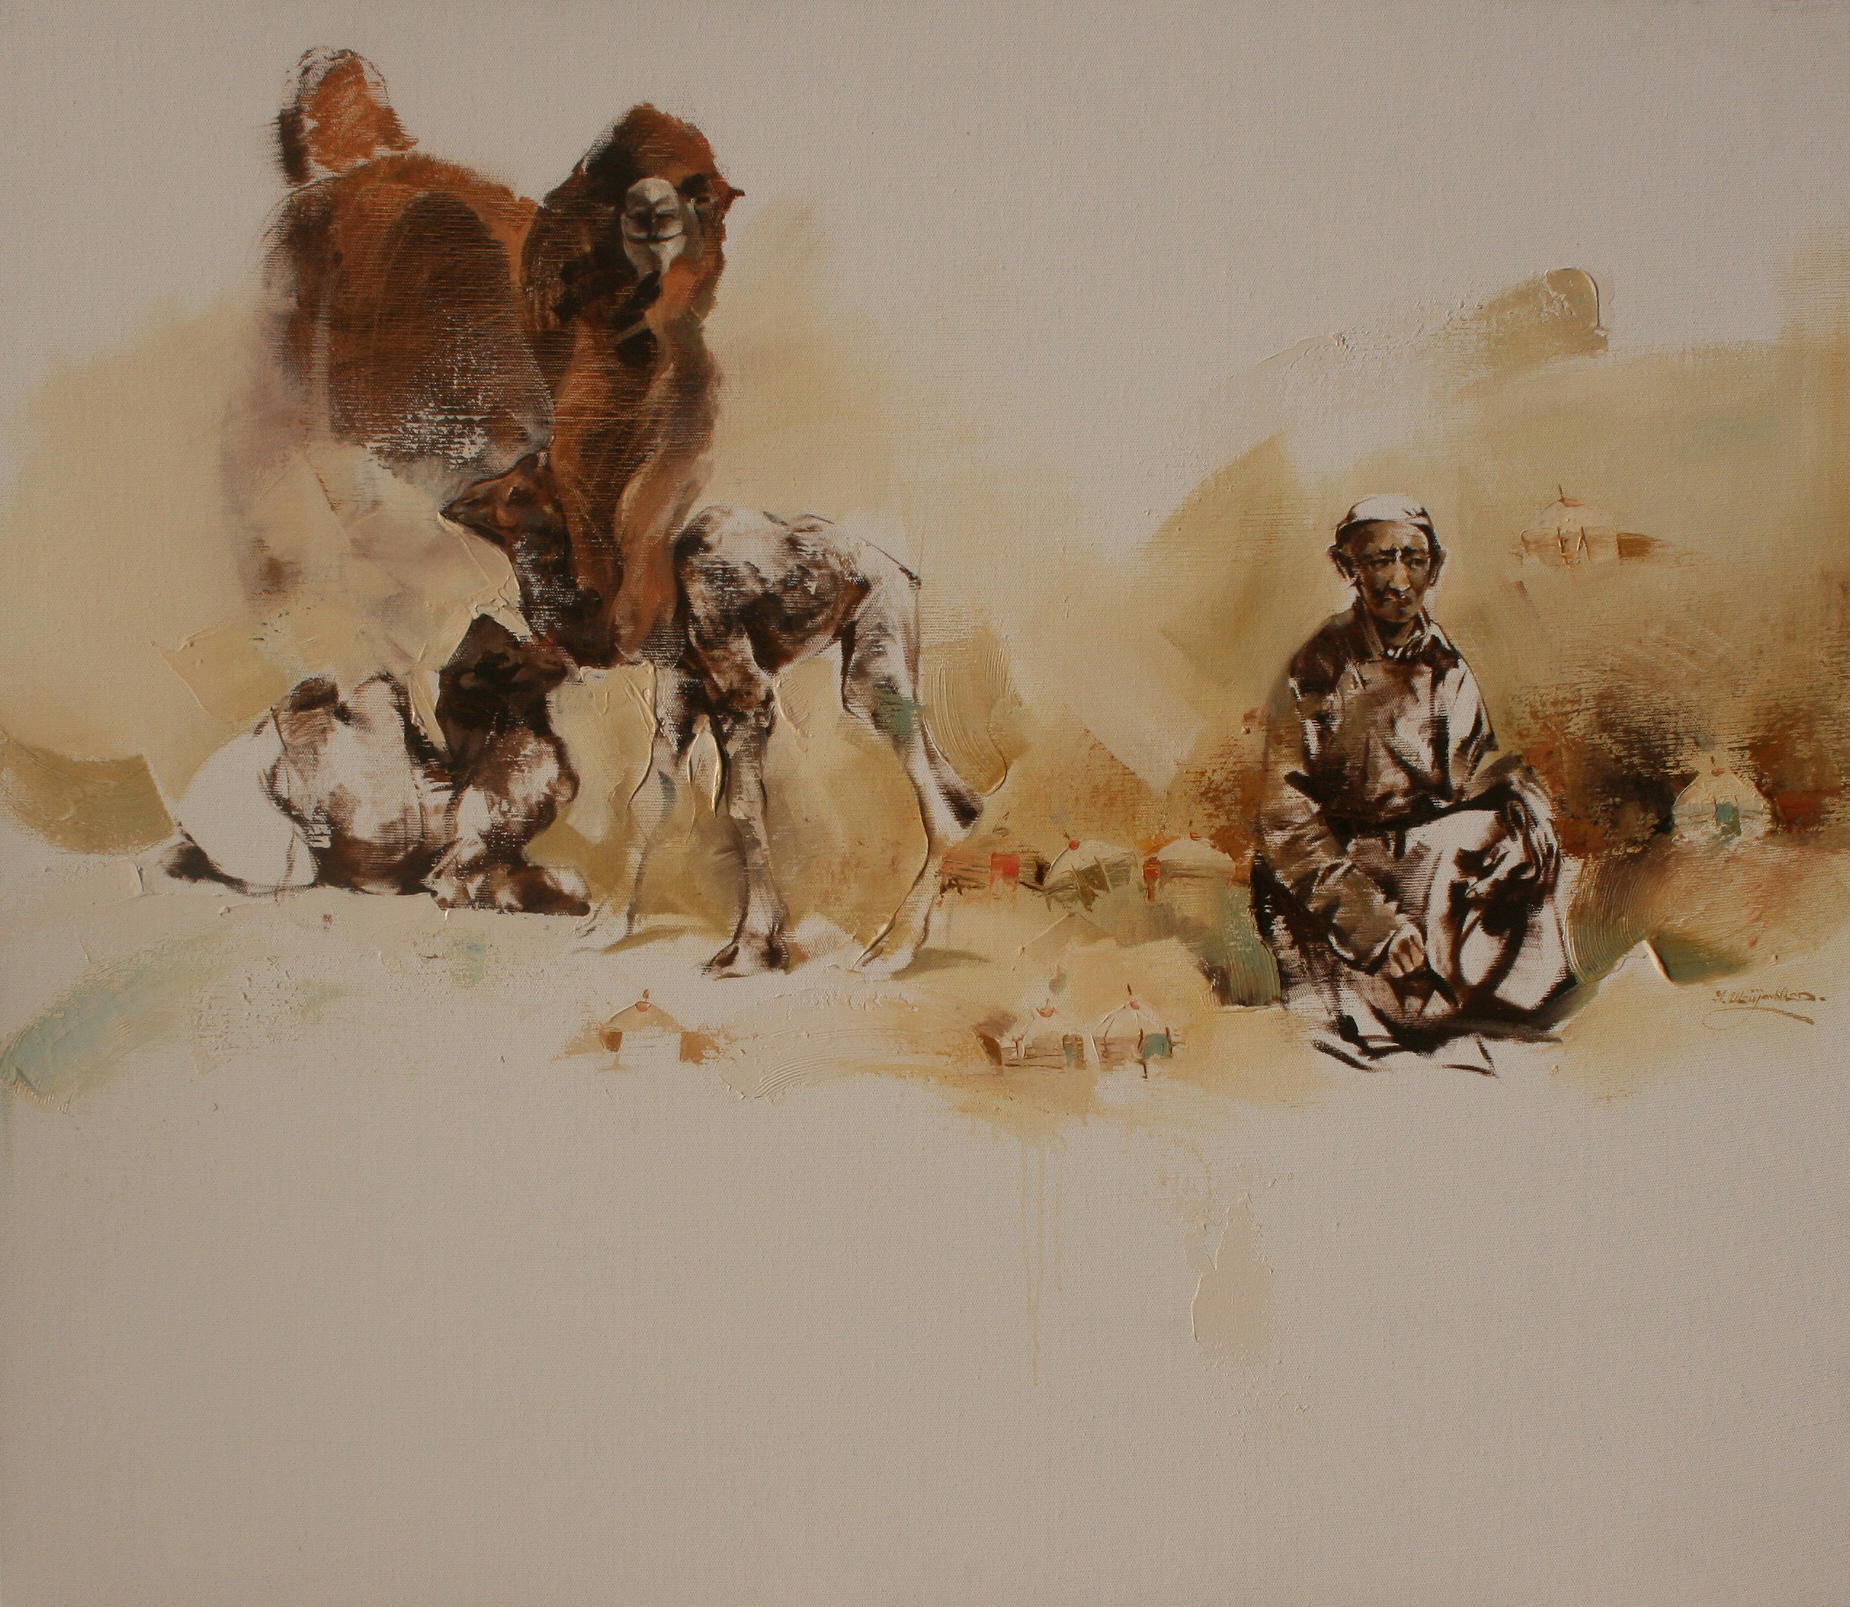 Artistic painting  of the Gobi desert